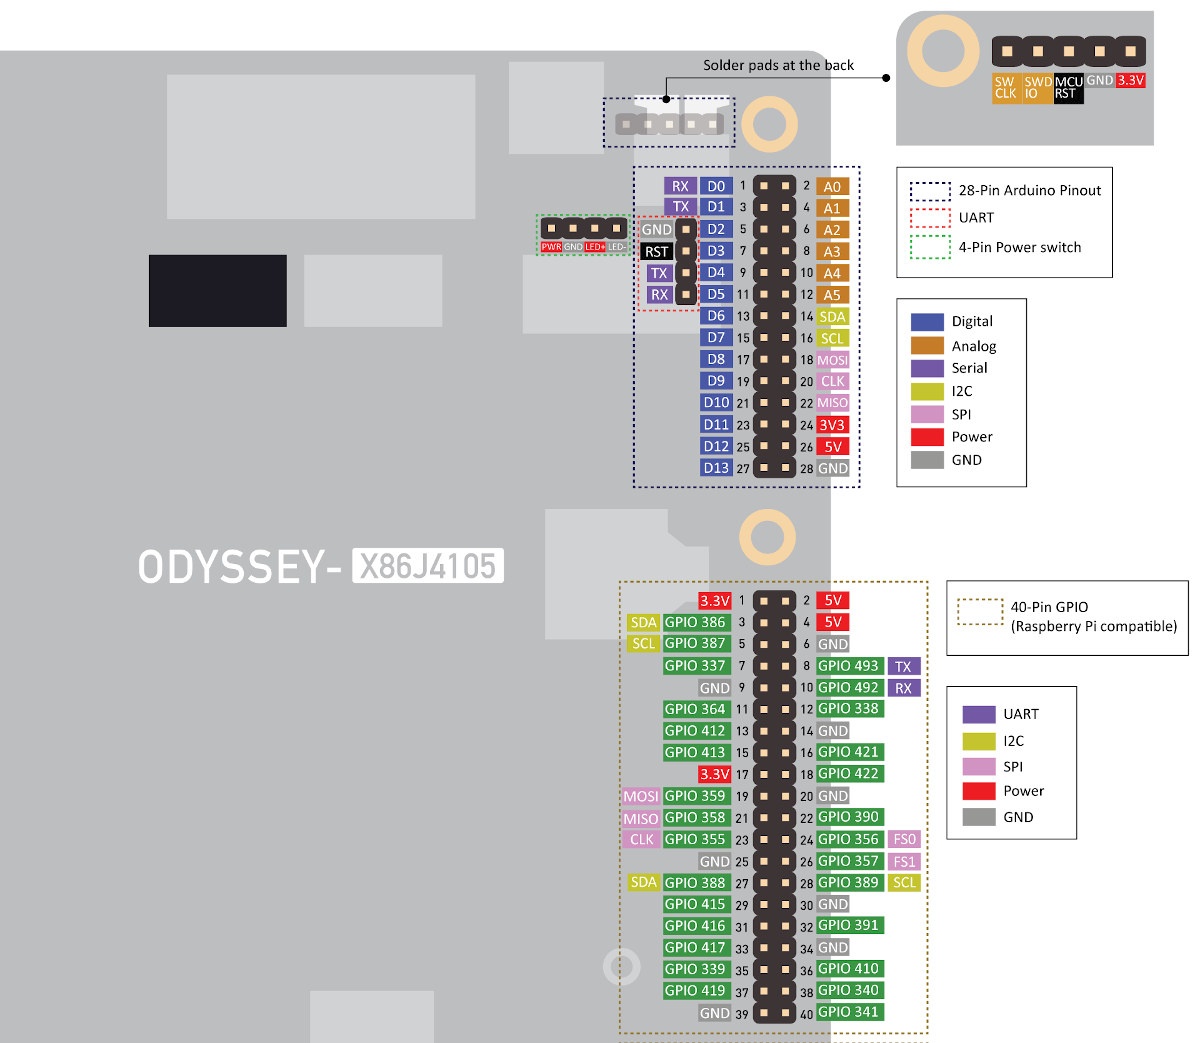 ODYSSEY-X86J4105 Raspberry Pi & Arduino Headers